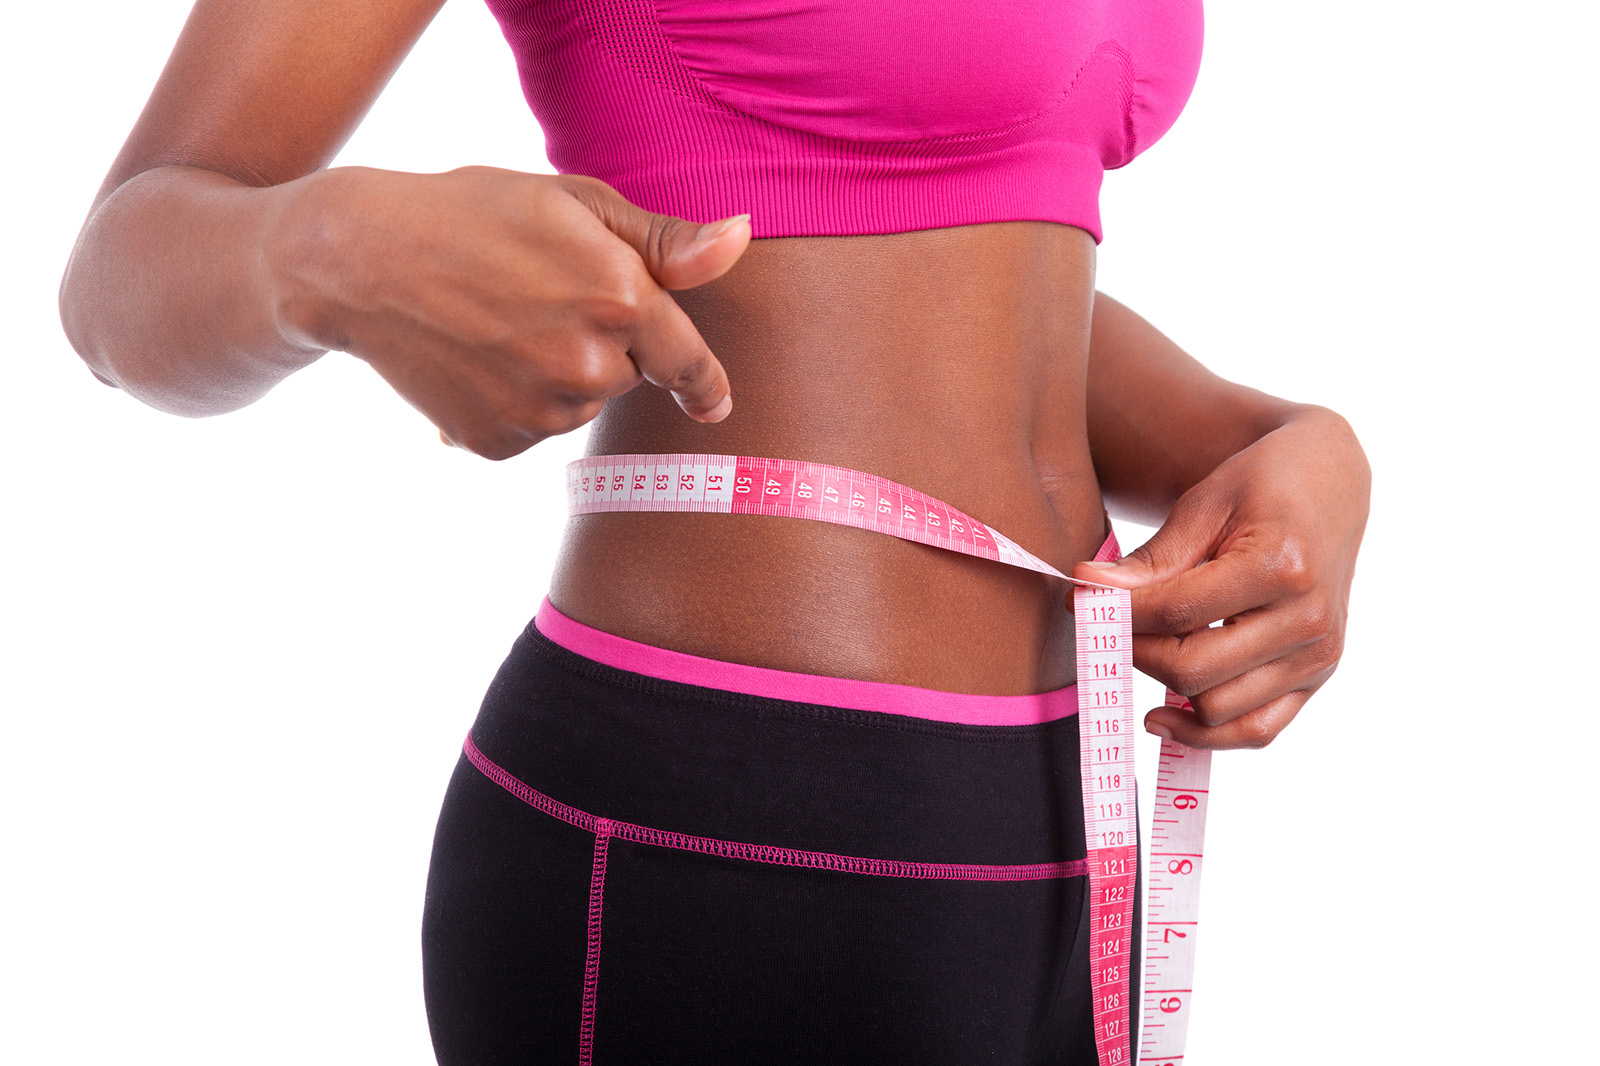 Flat tummy stomach weight weightloss weight loss